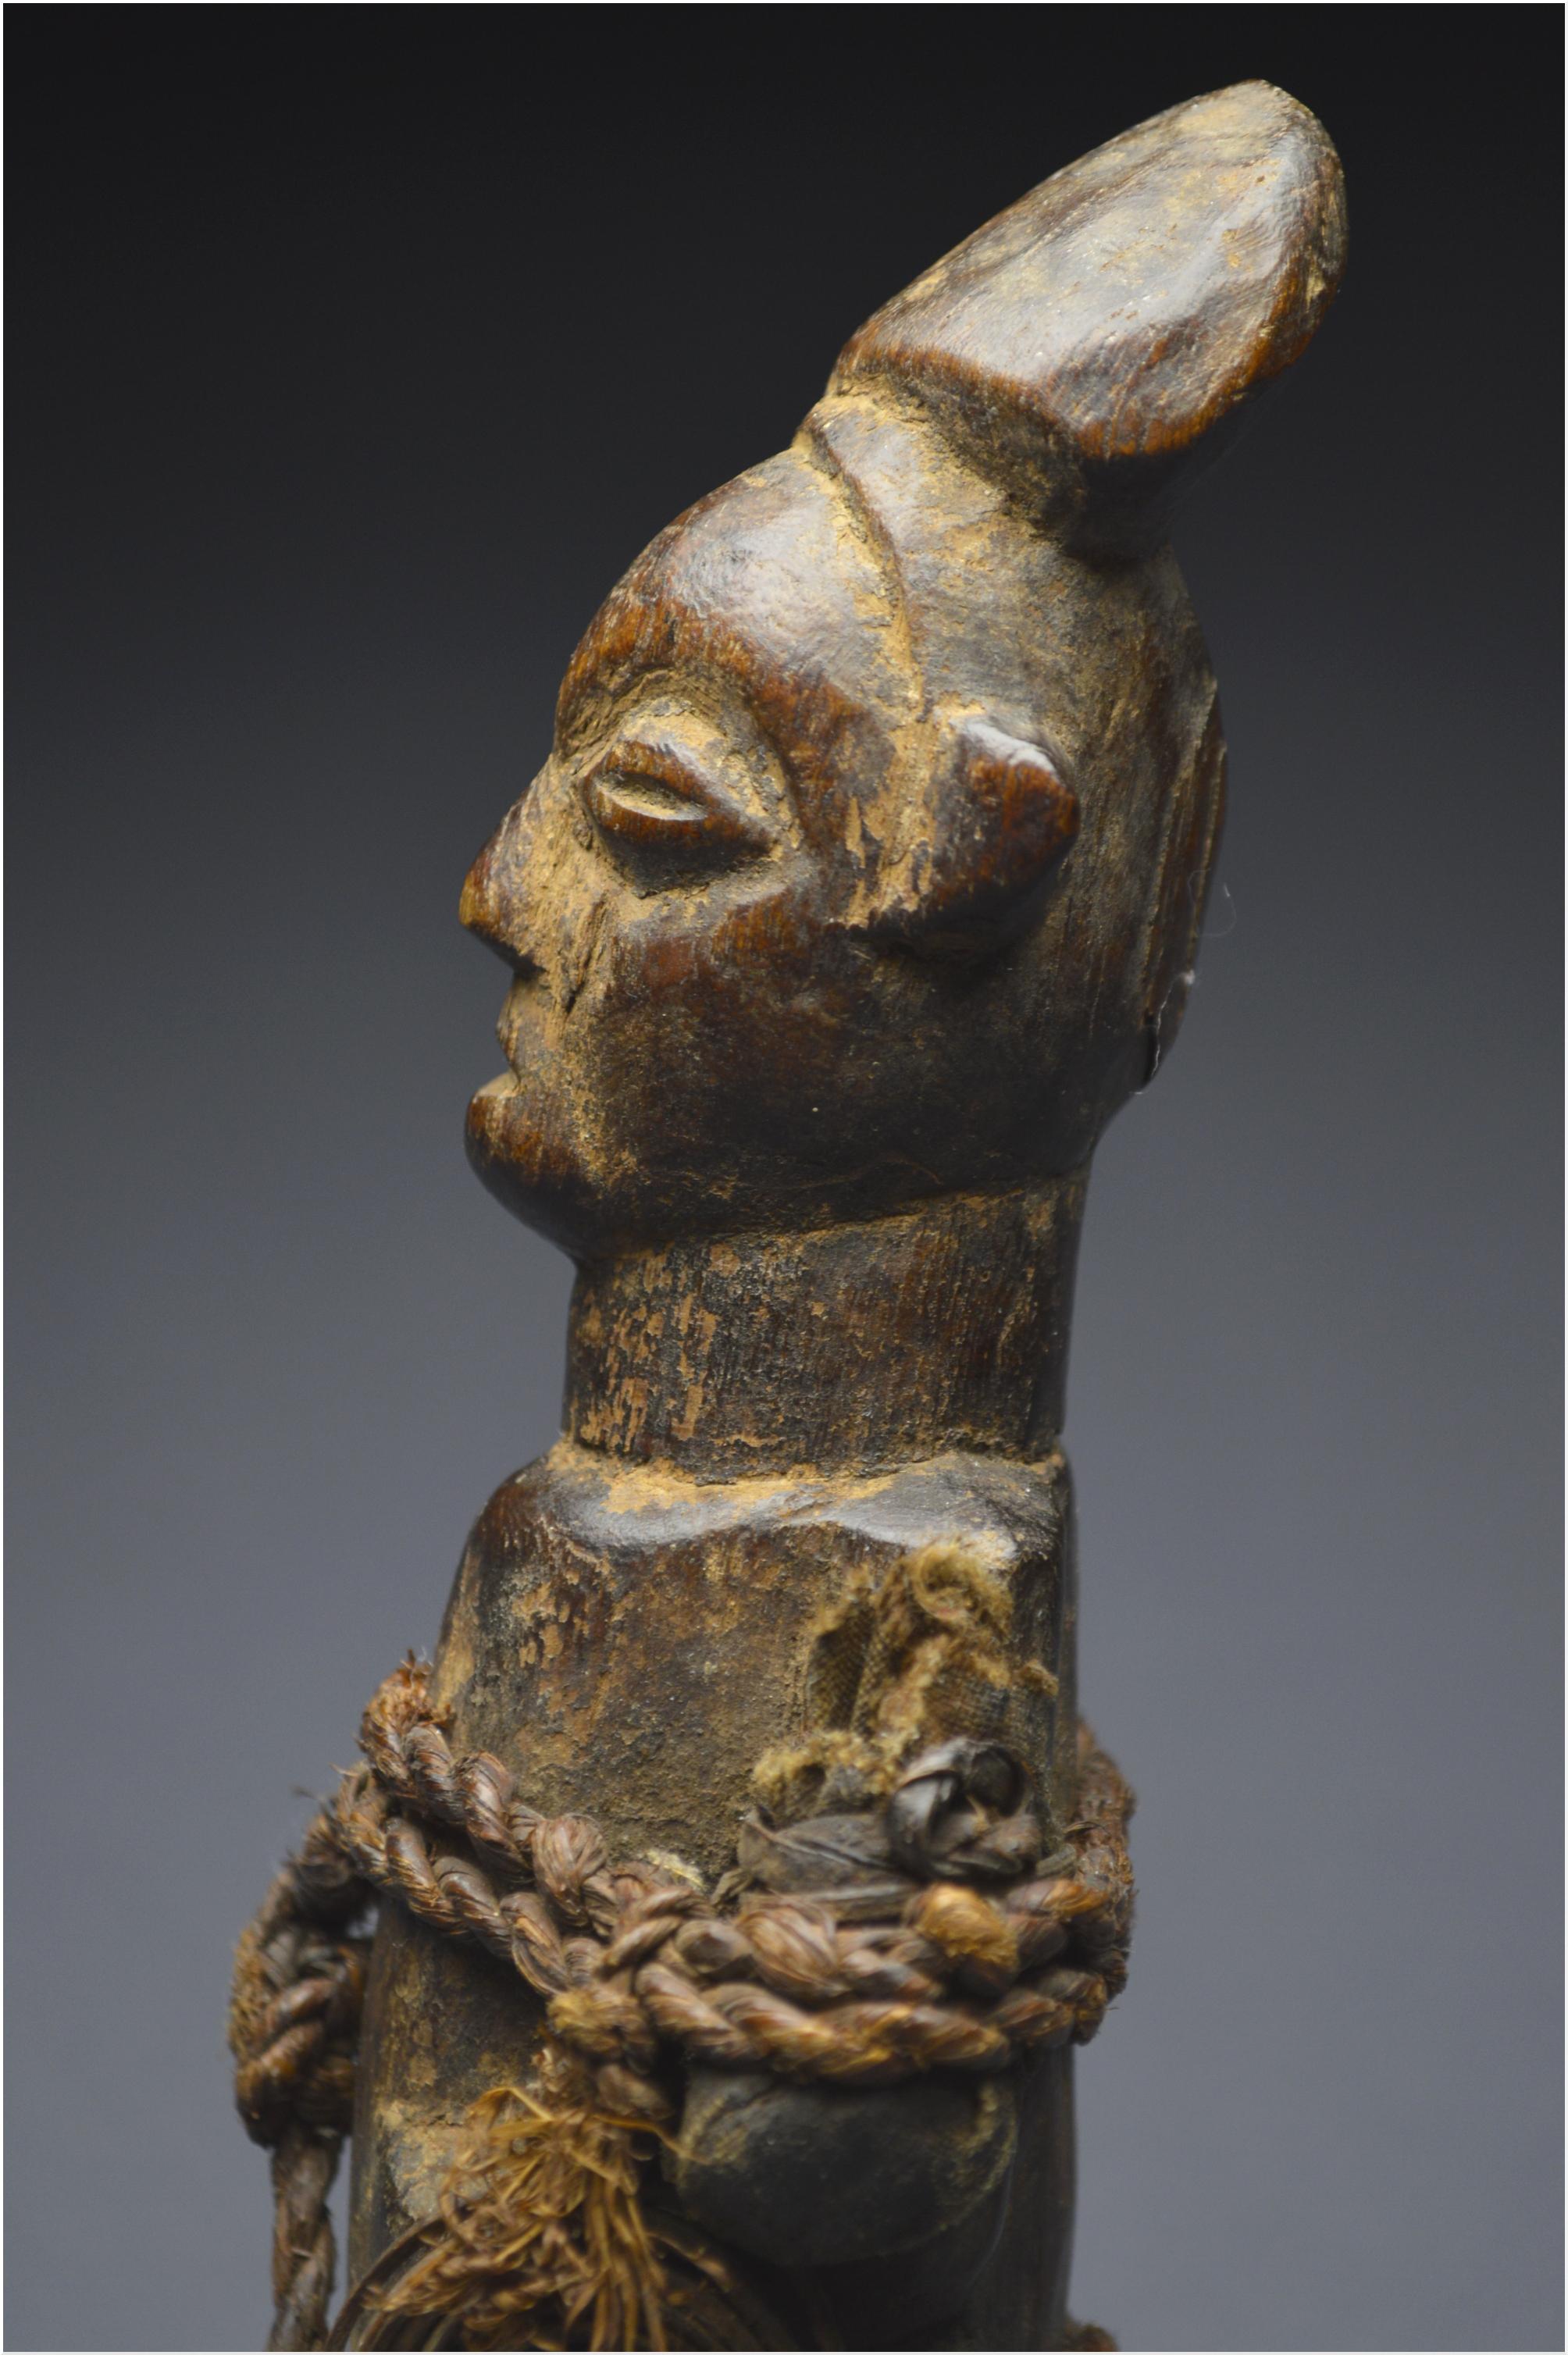 Mid-20th Century, Dem. Rep. Congo, Teke Culture, Ancient Ancestor Fetish 6